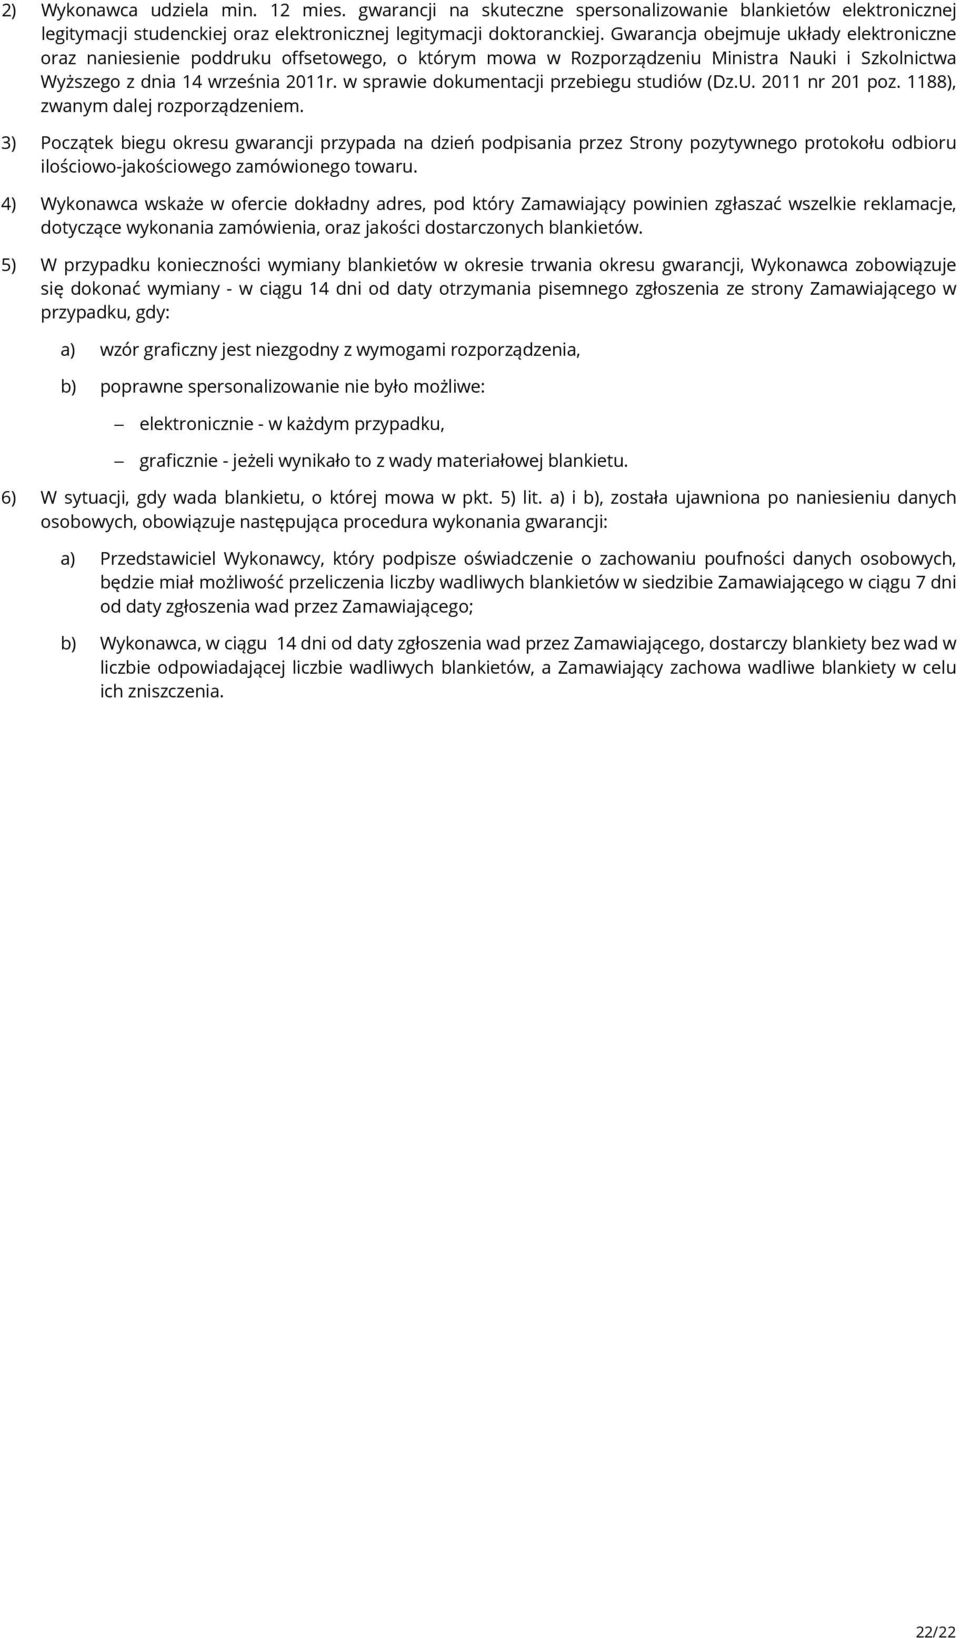 w sprawie dokumentacji przebiegu studiów (Dz.U. 2011 nr 201 poz. 1188), zwanym dalej rozporządzeniem.